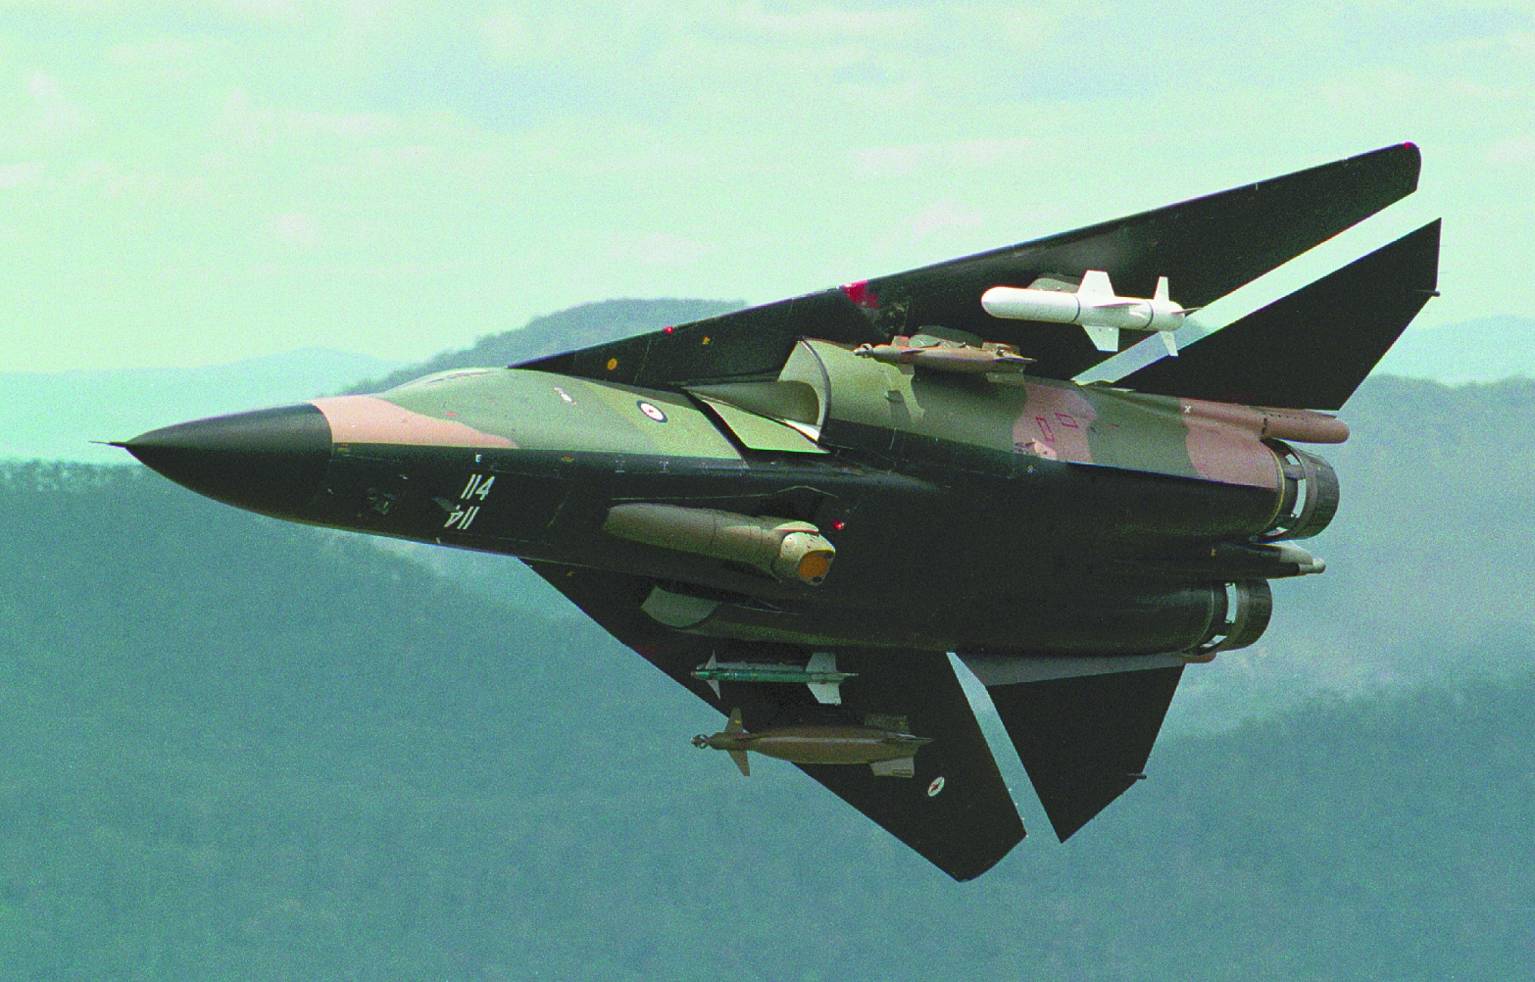 Grumman f-14 tomcat палубный истребитель-перехватчик